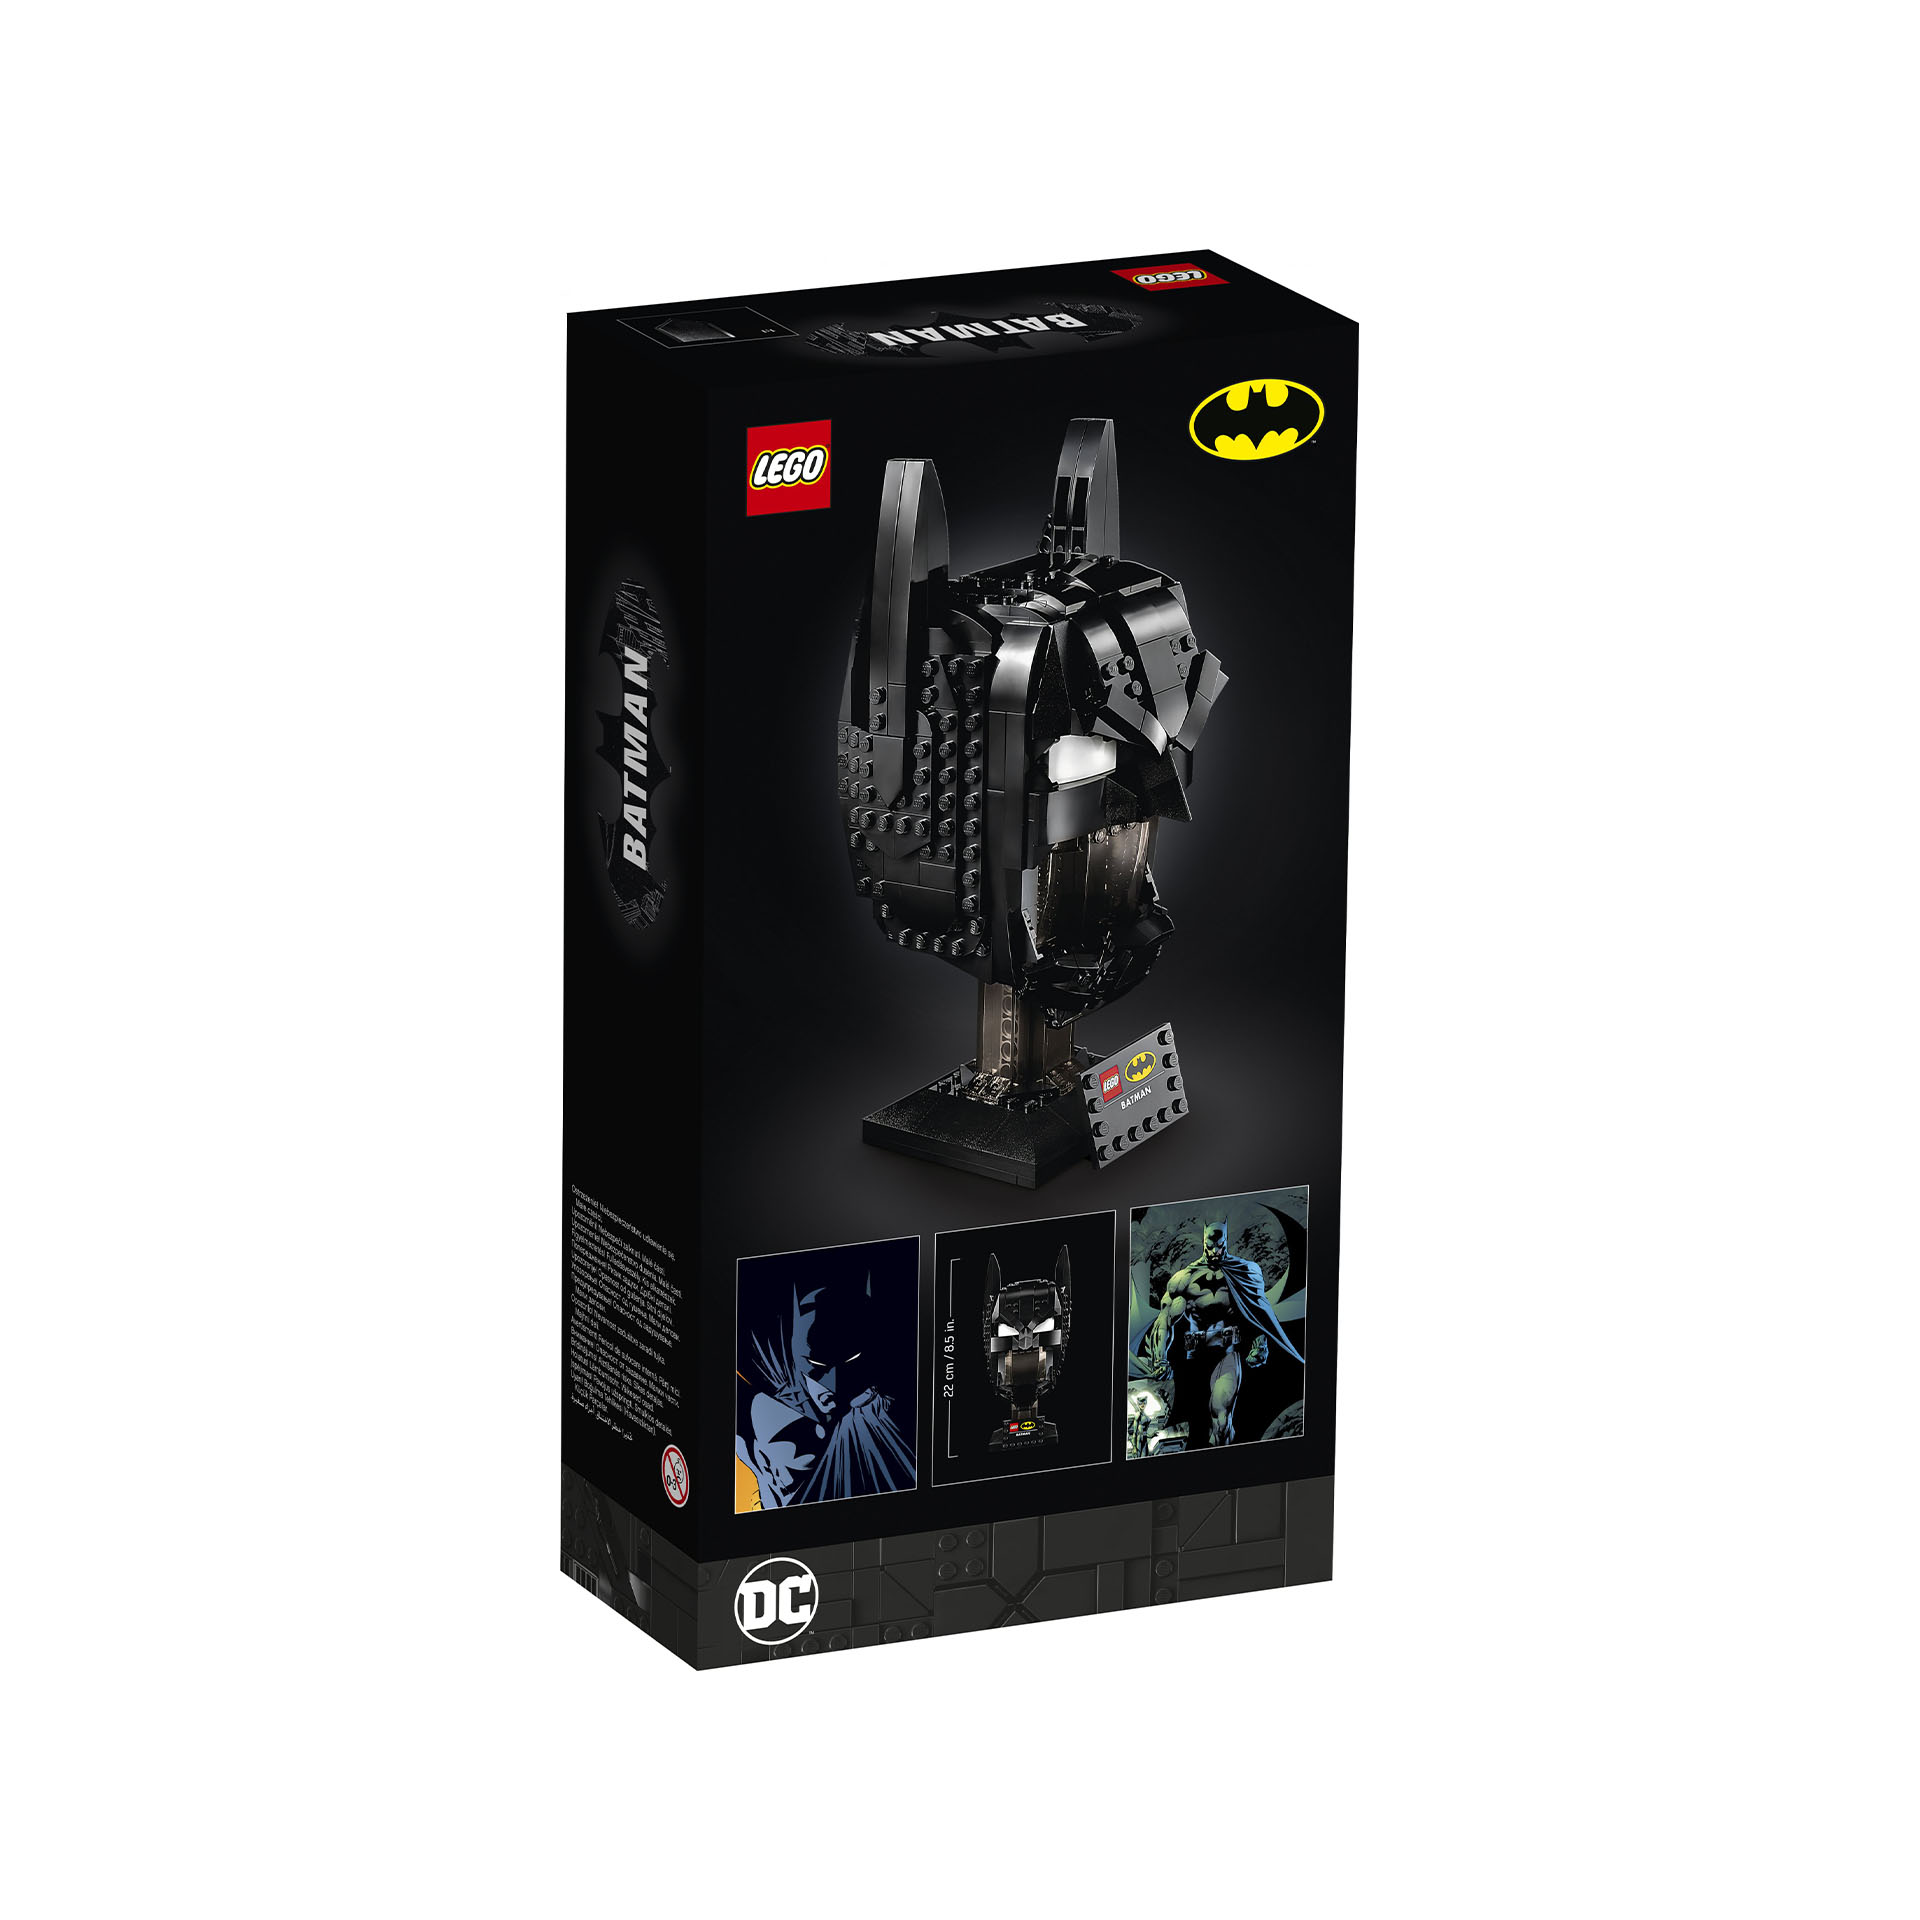 LEGO DC Cappuccio di Batman, Set da Costruzione per Adulti, Modello da Collezion 76182, , large